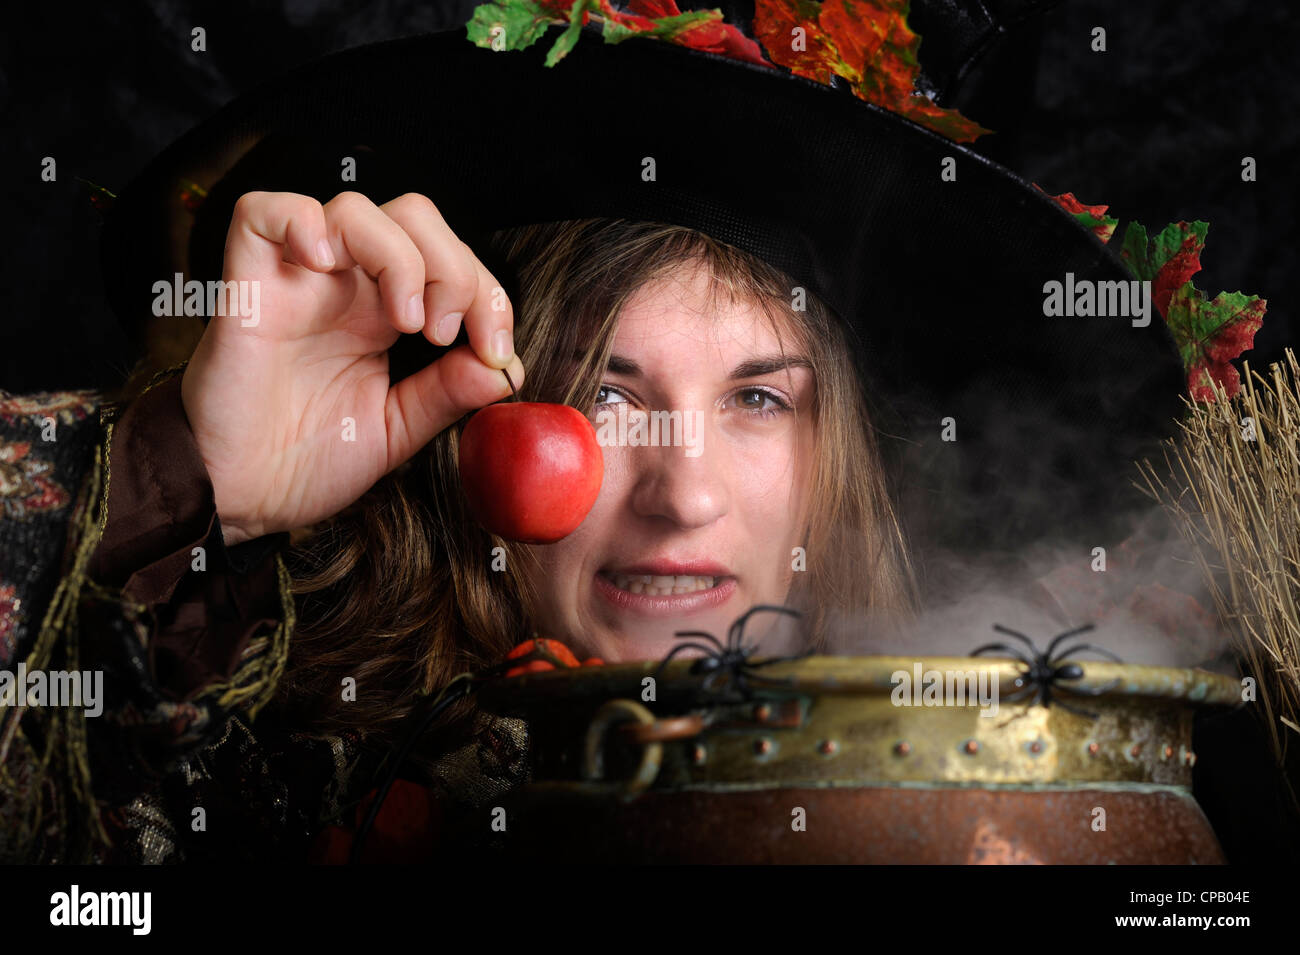 Chaudron ; chaudières ; ; ; Chapeau de sorcière halloween spider web ; ; ; cuivre ; vertical ; orange ; un poison ; apple ; Banque D'Images